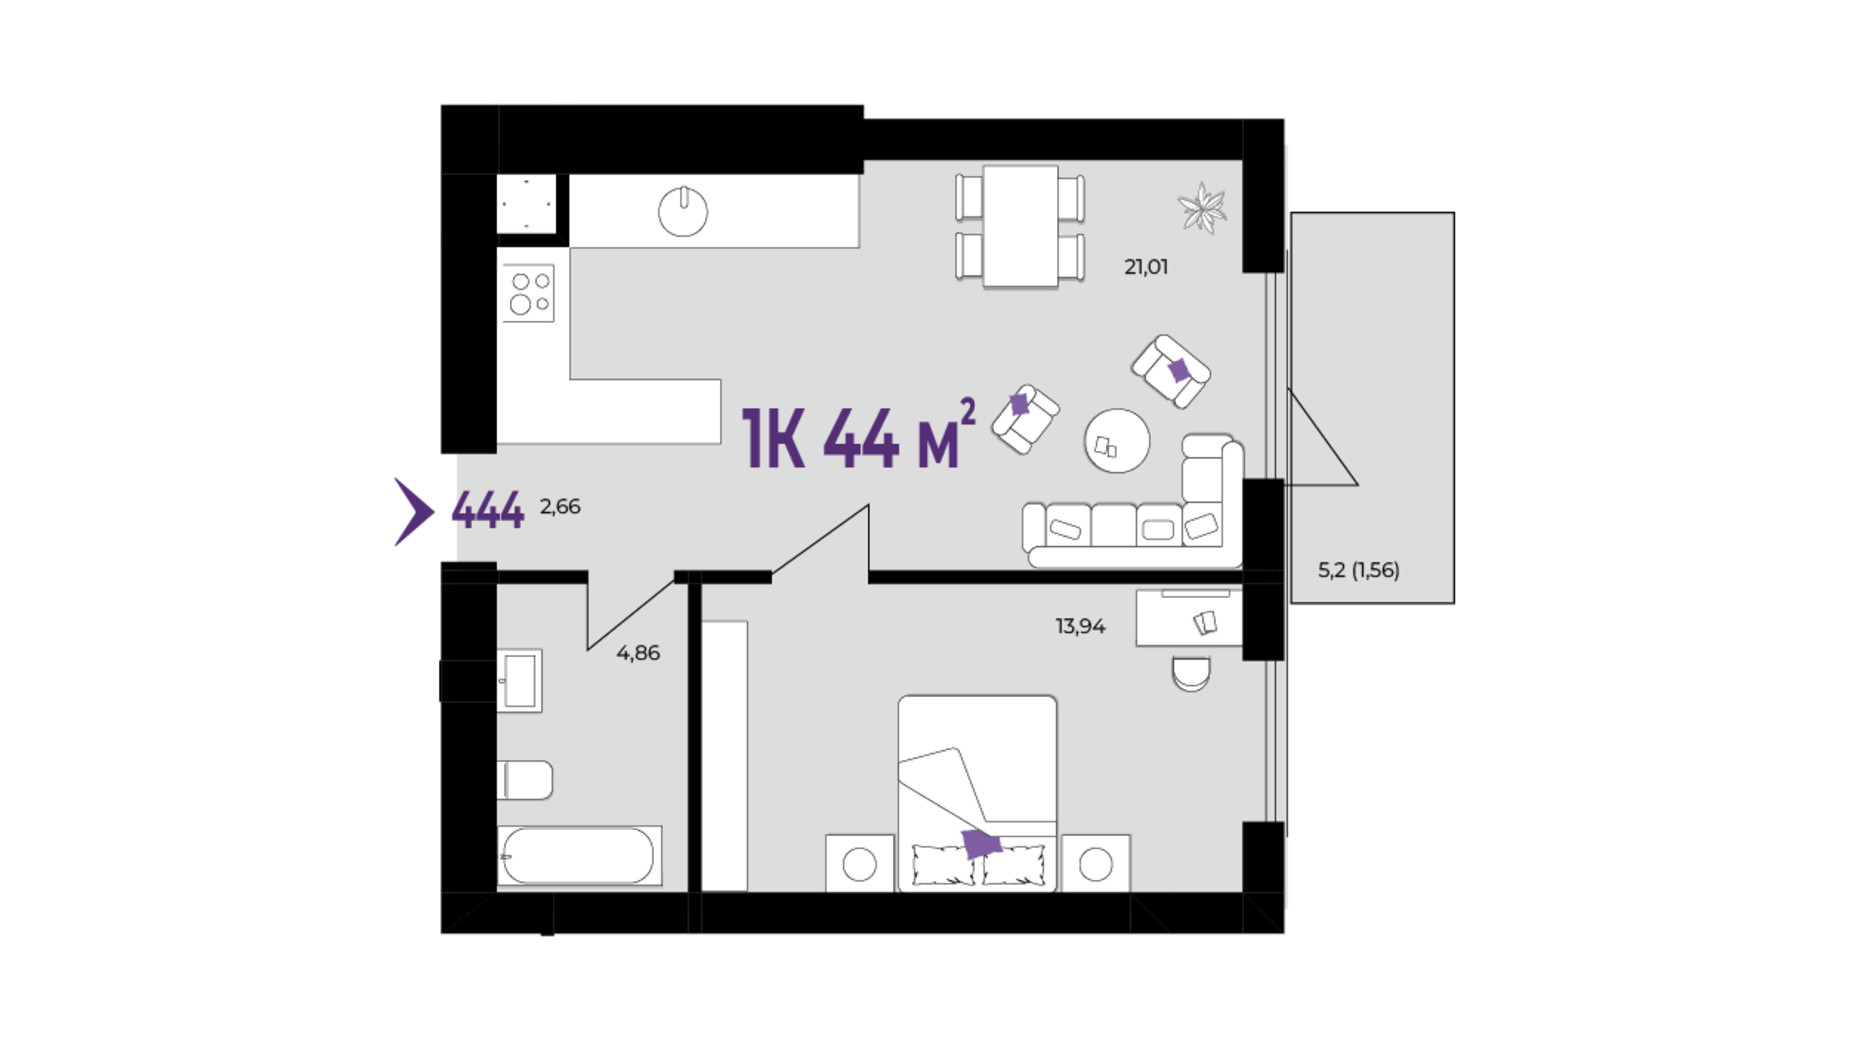 Планировка 1-комнатной квартиры в ЖК Wawel 44 м², фото 650947